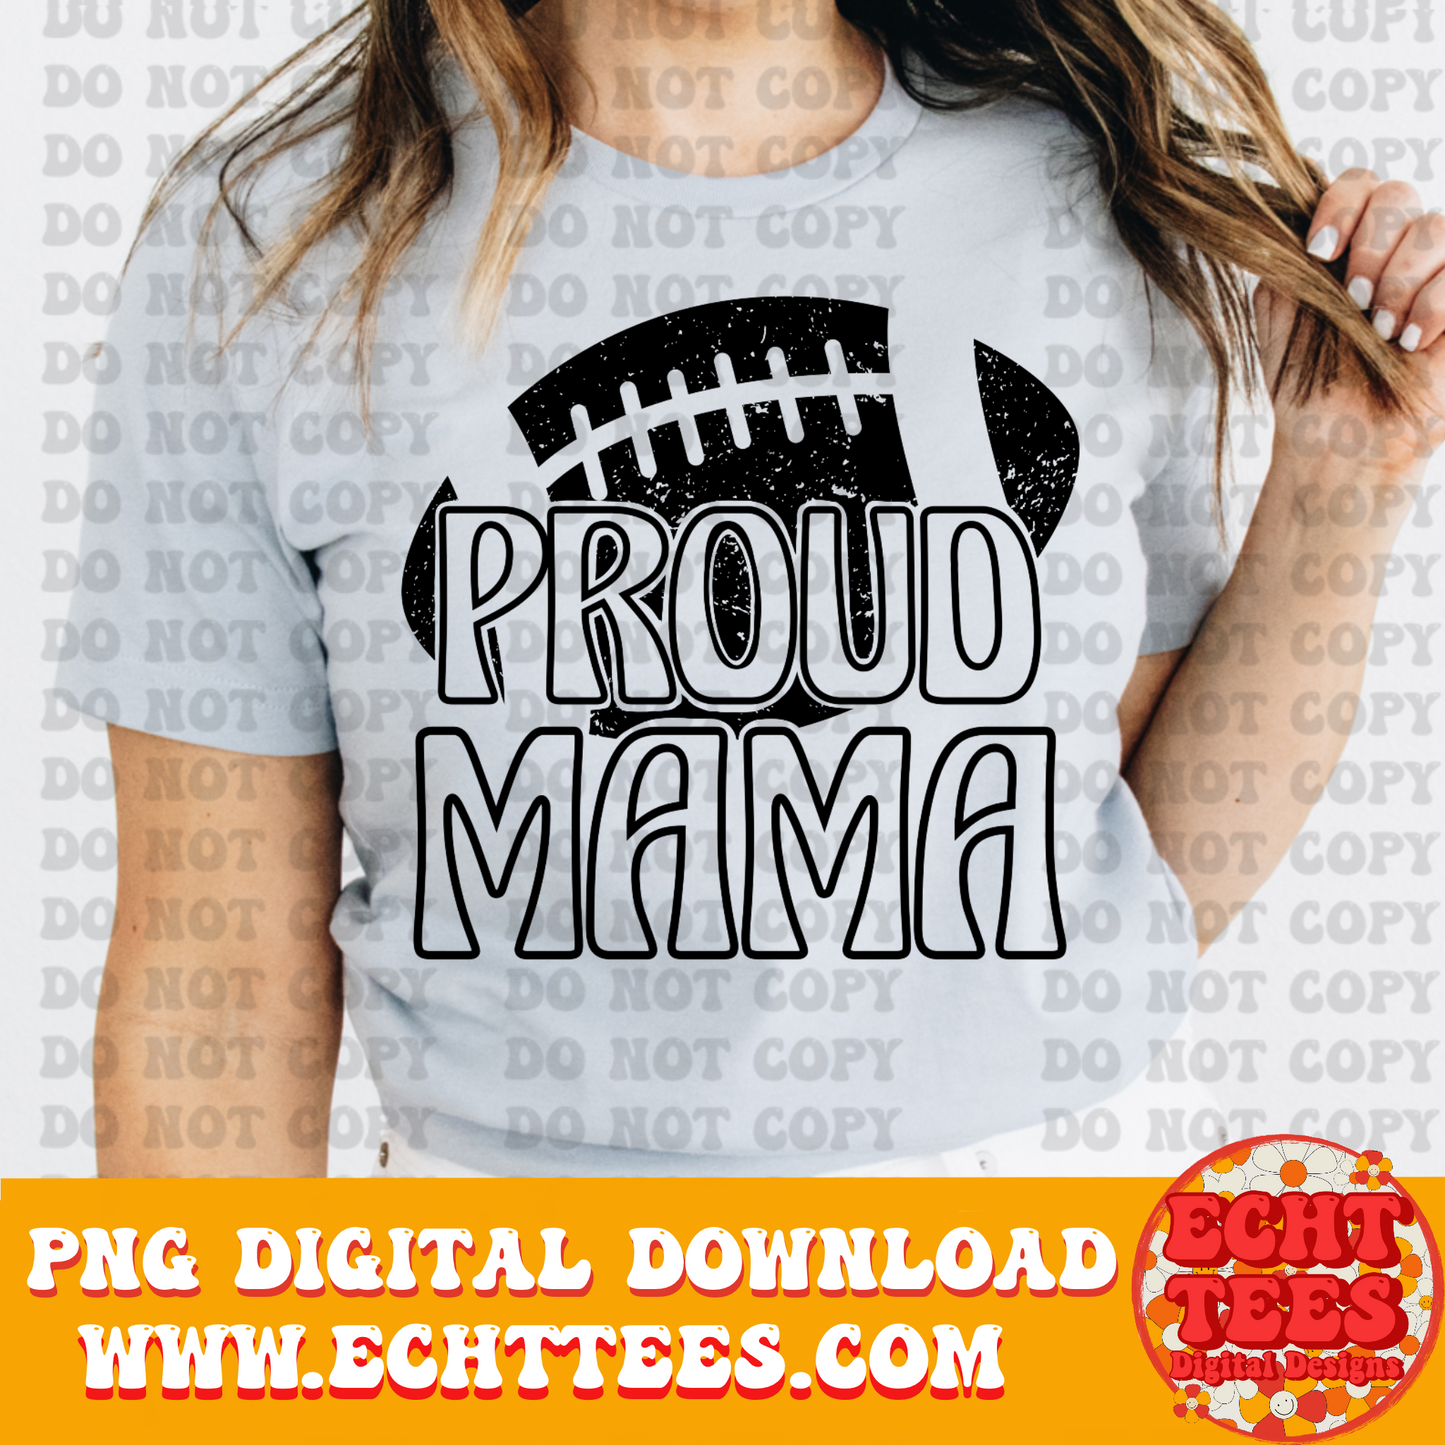 Proud Football Mama PNG Digital Download